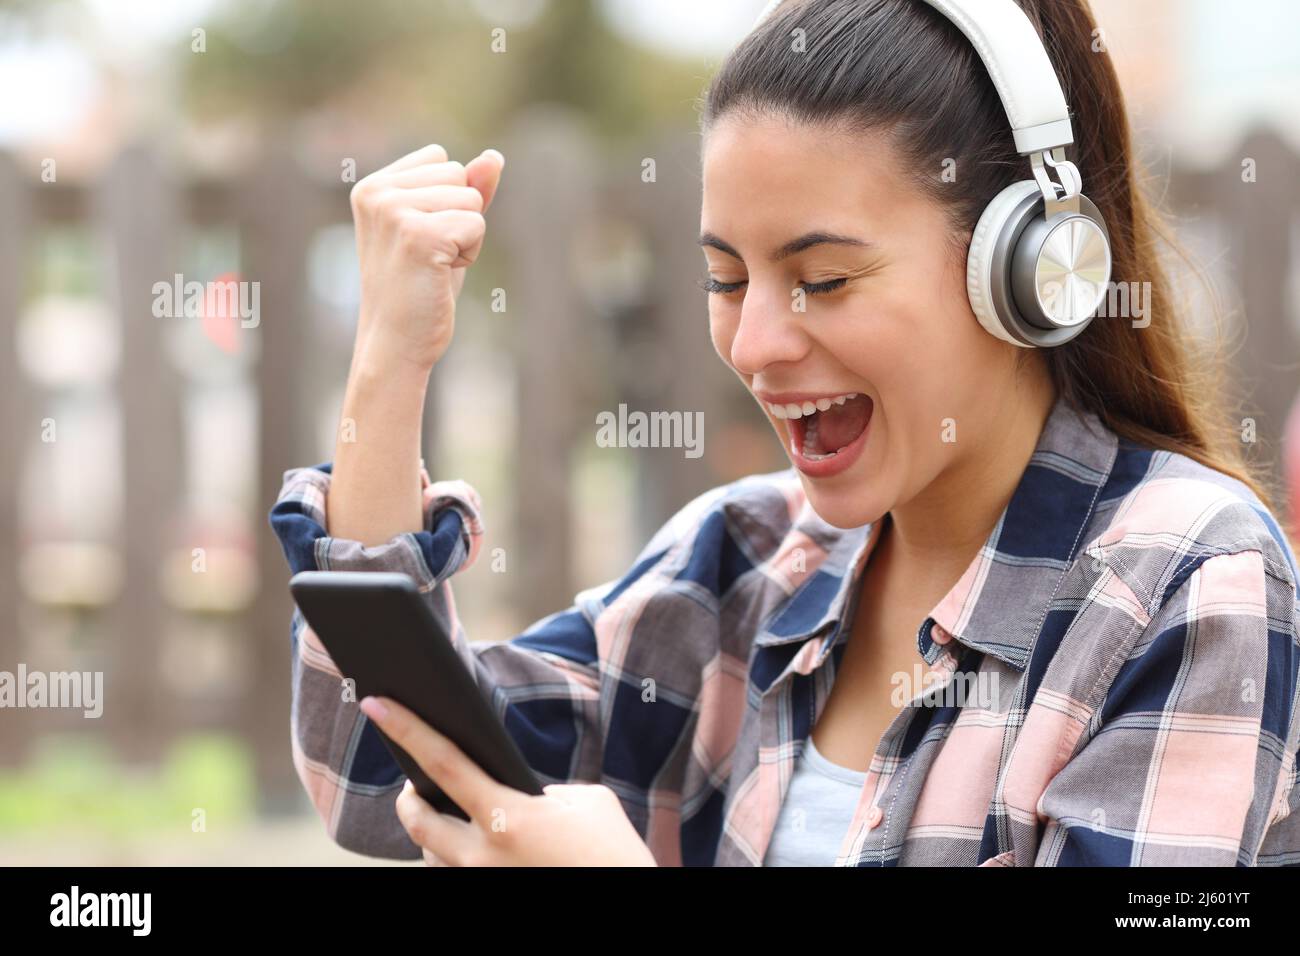 Aufgeregter Teenager mit kabellosen Kopfhörern, der in einem Park Smartphone überprüft Stockfoto